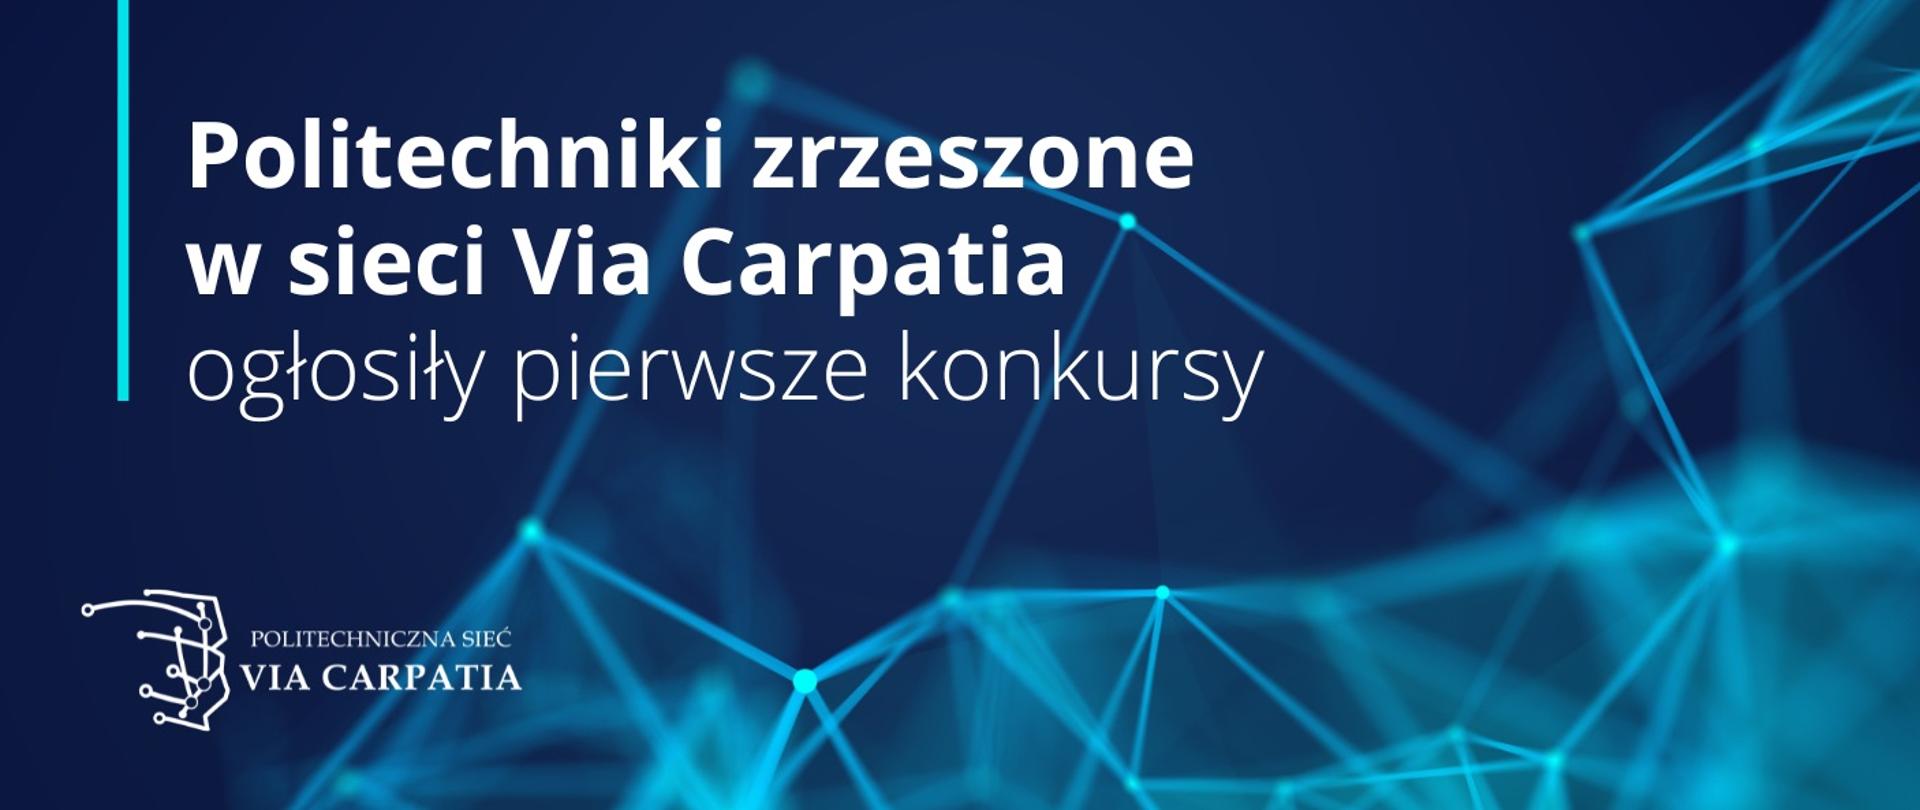 Grafika - na niebieskim tle jasne linie i napis Politechniki zrzeszone w sieci Via Carpatia ogłosiły pierwsze konkursy.